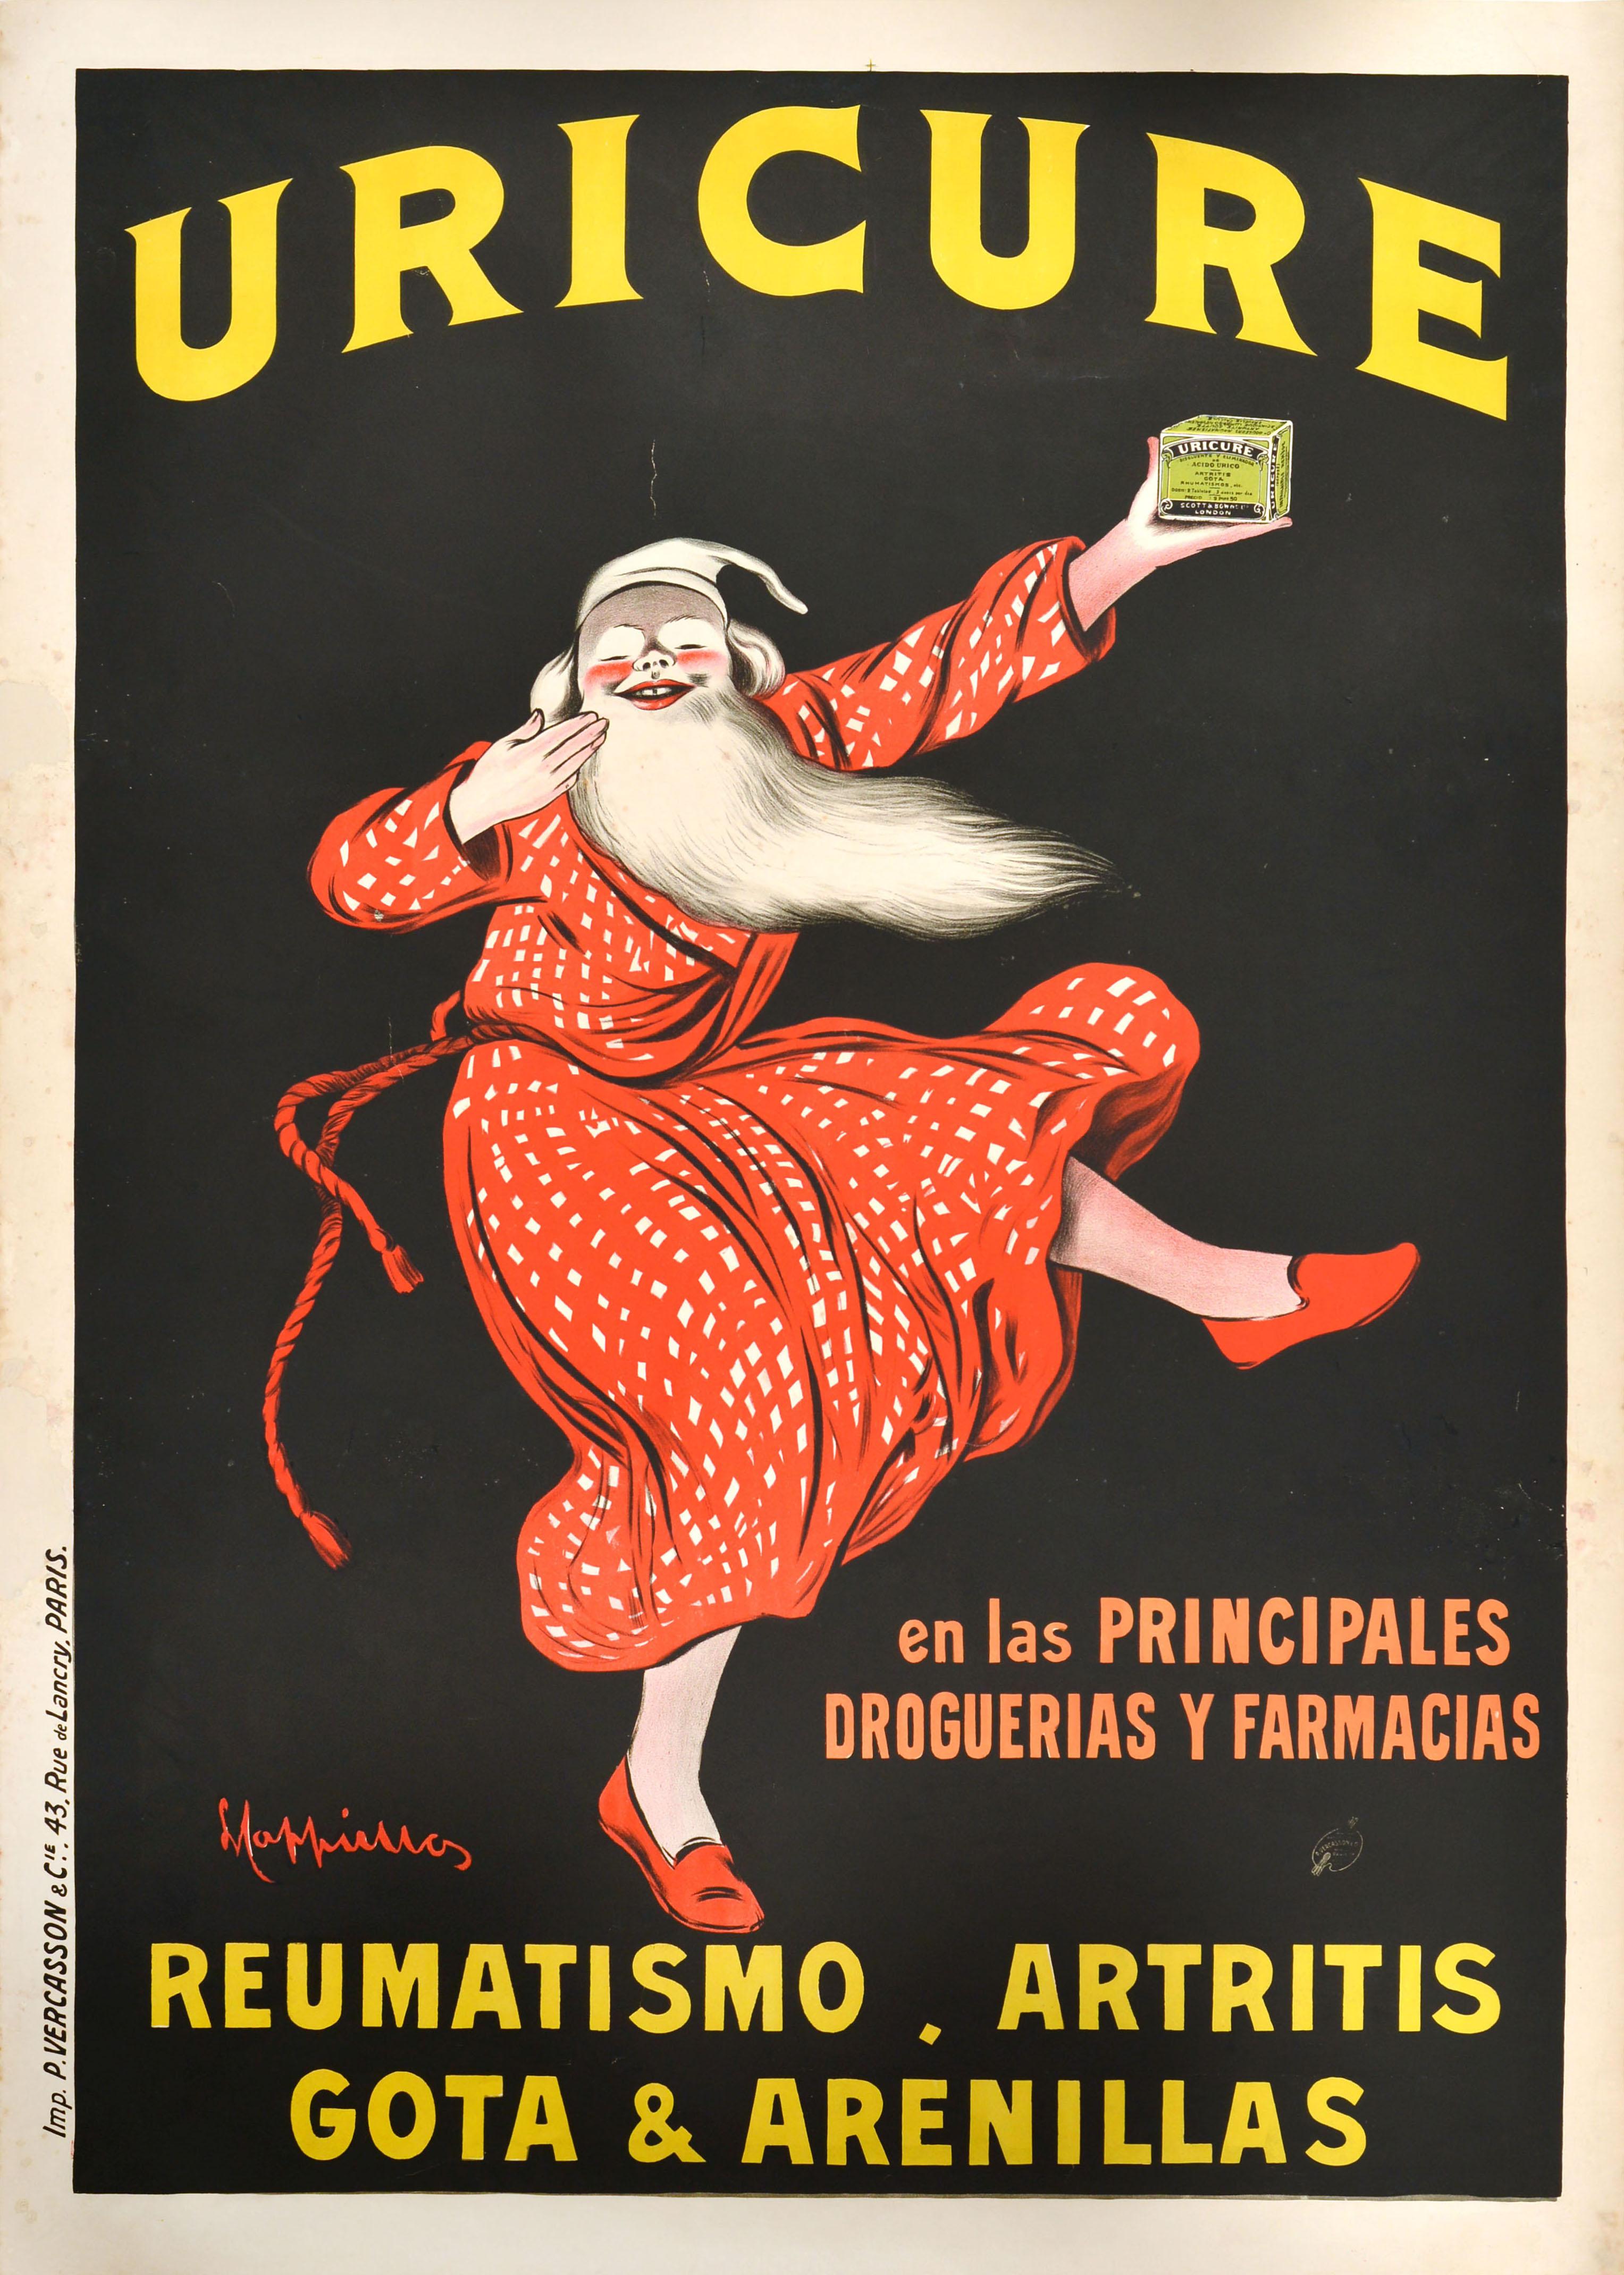 Originales antikes Werbeplakat des bekannten Plakatkünstlers Leonetto Cappiello (1875-1942) für Uricure mit einem großartigen Design, das einen lächelnden älteren Mann mit weißem Bart zeigt, der einen rot-weißen Morgenmantel und eine weiße Mütze